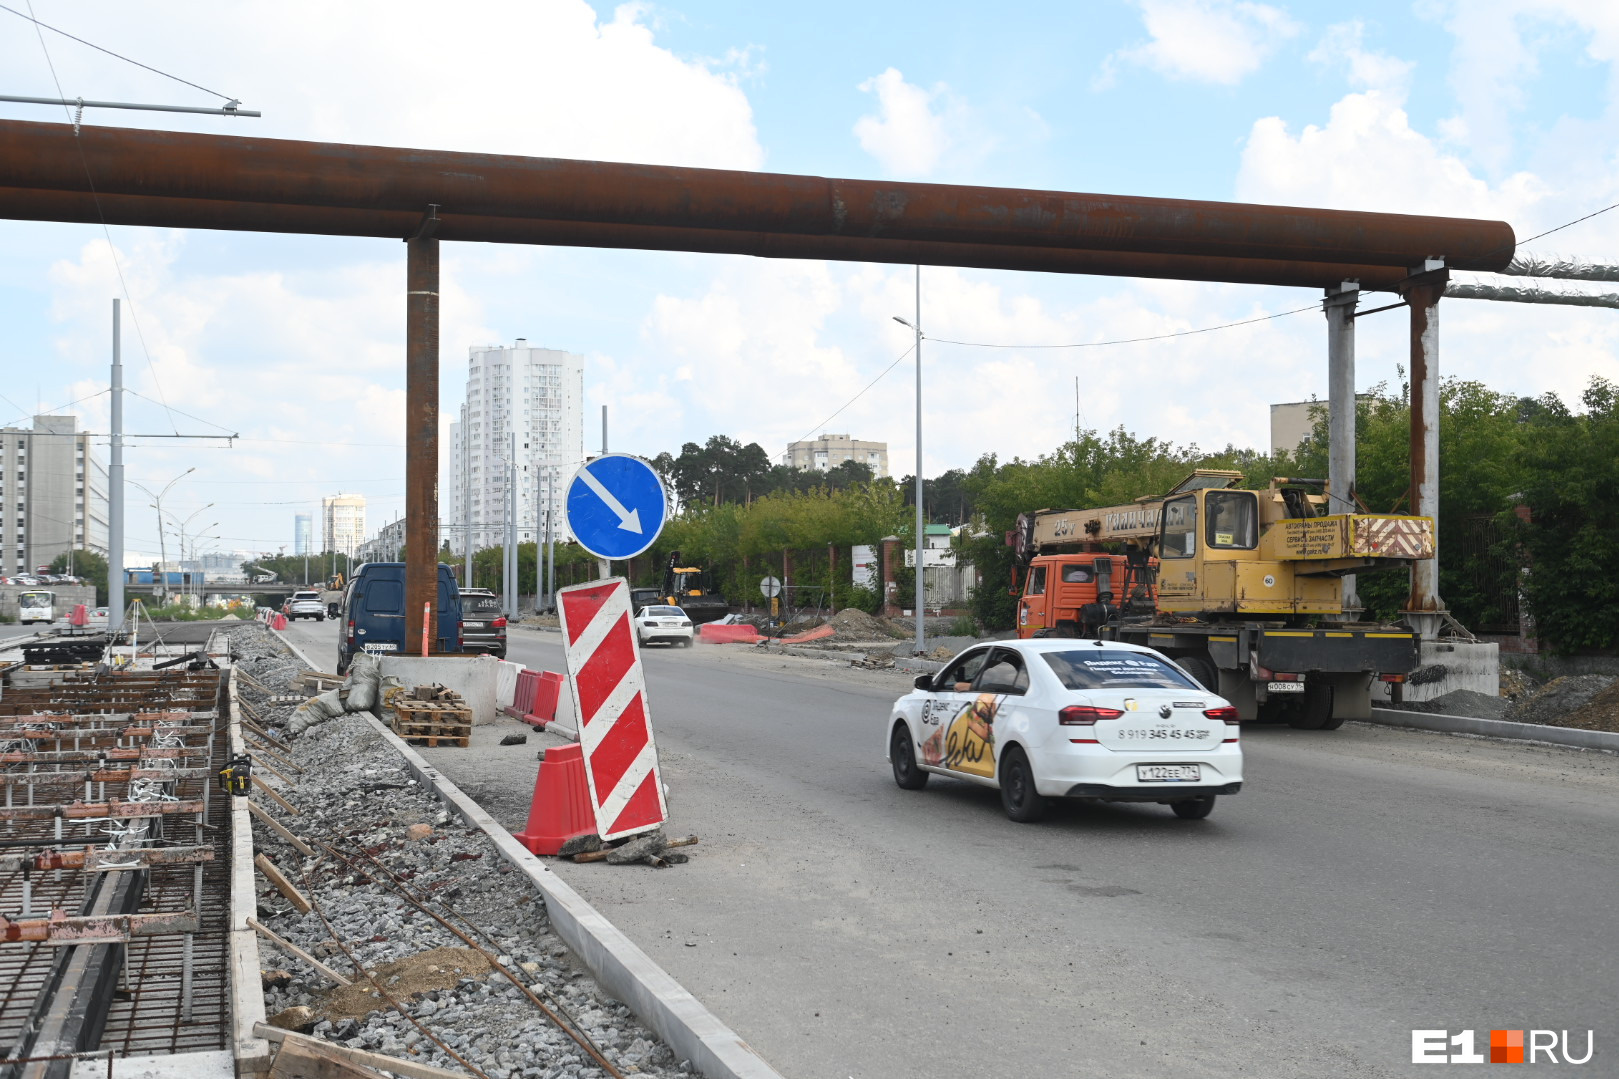 Не трамвай — объедешь. Ржавая «триумфальная арка» отняла часть дороги у водителей Екатеринбурга